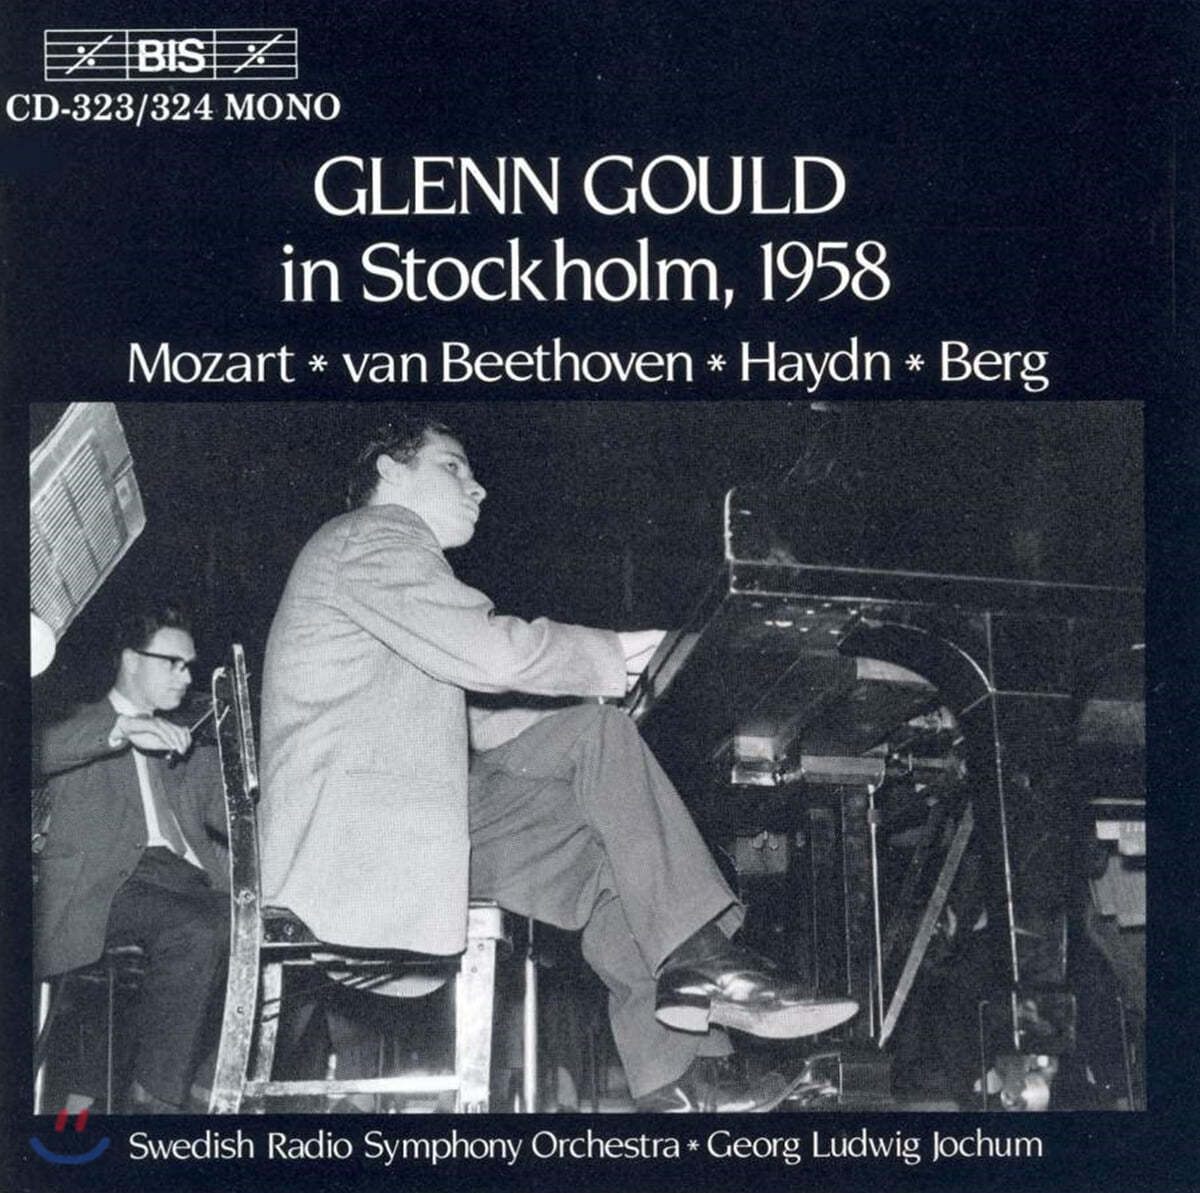 글렌 굴드 1958년 스톡홀롬 라이브 (Glenn Gould in Stockholm 1958)